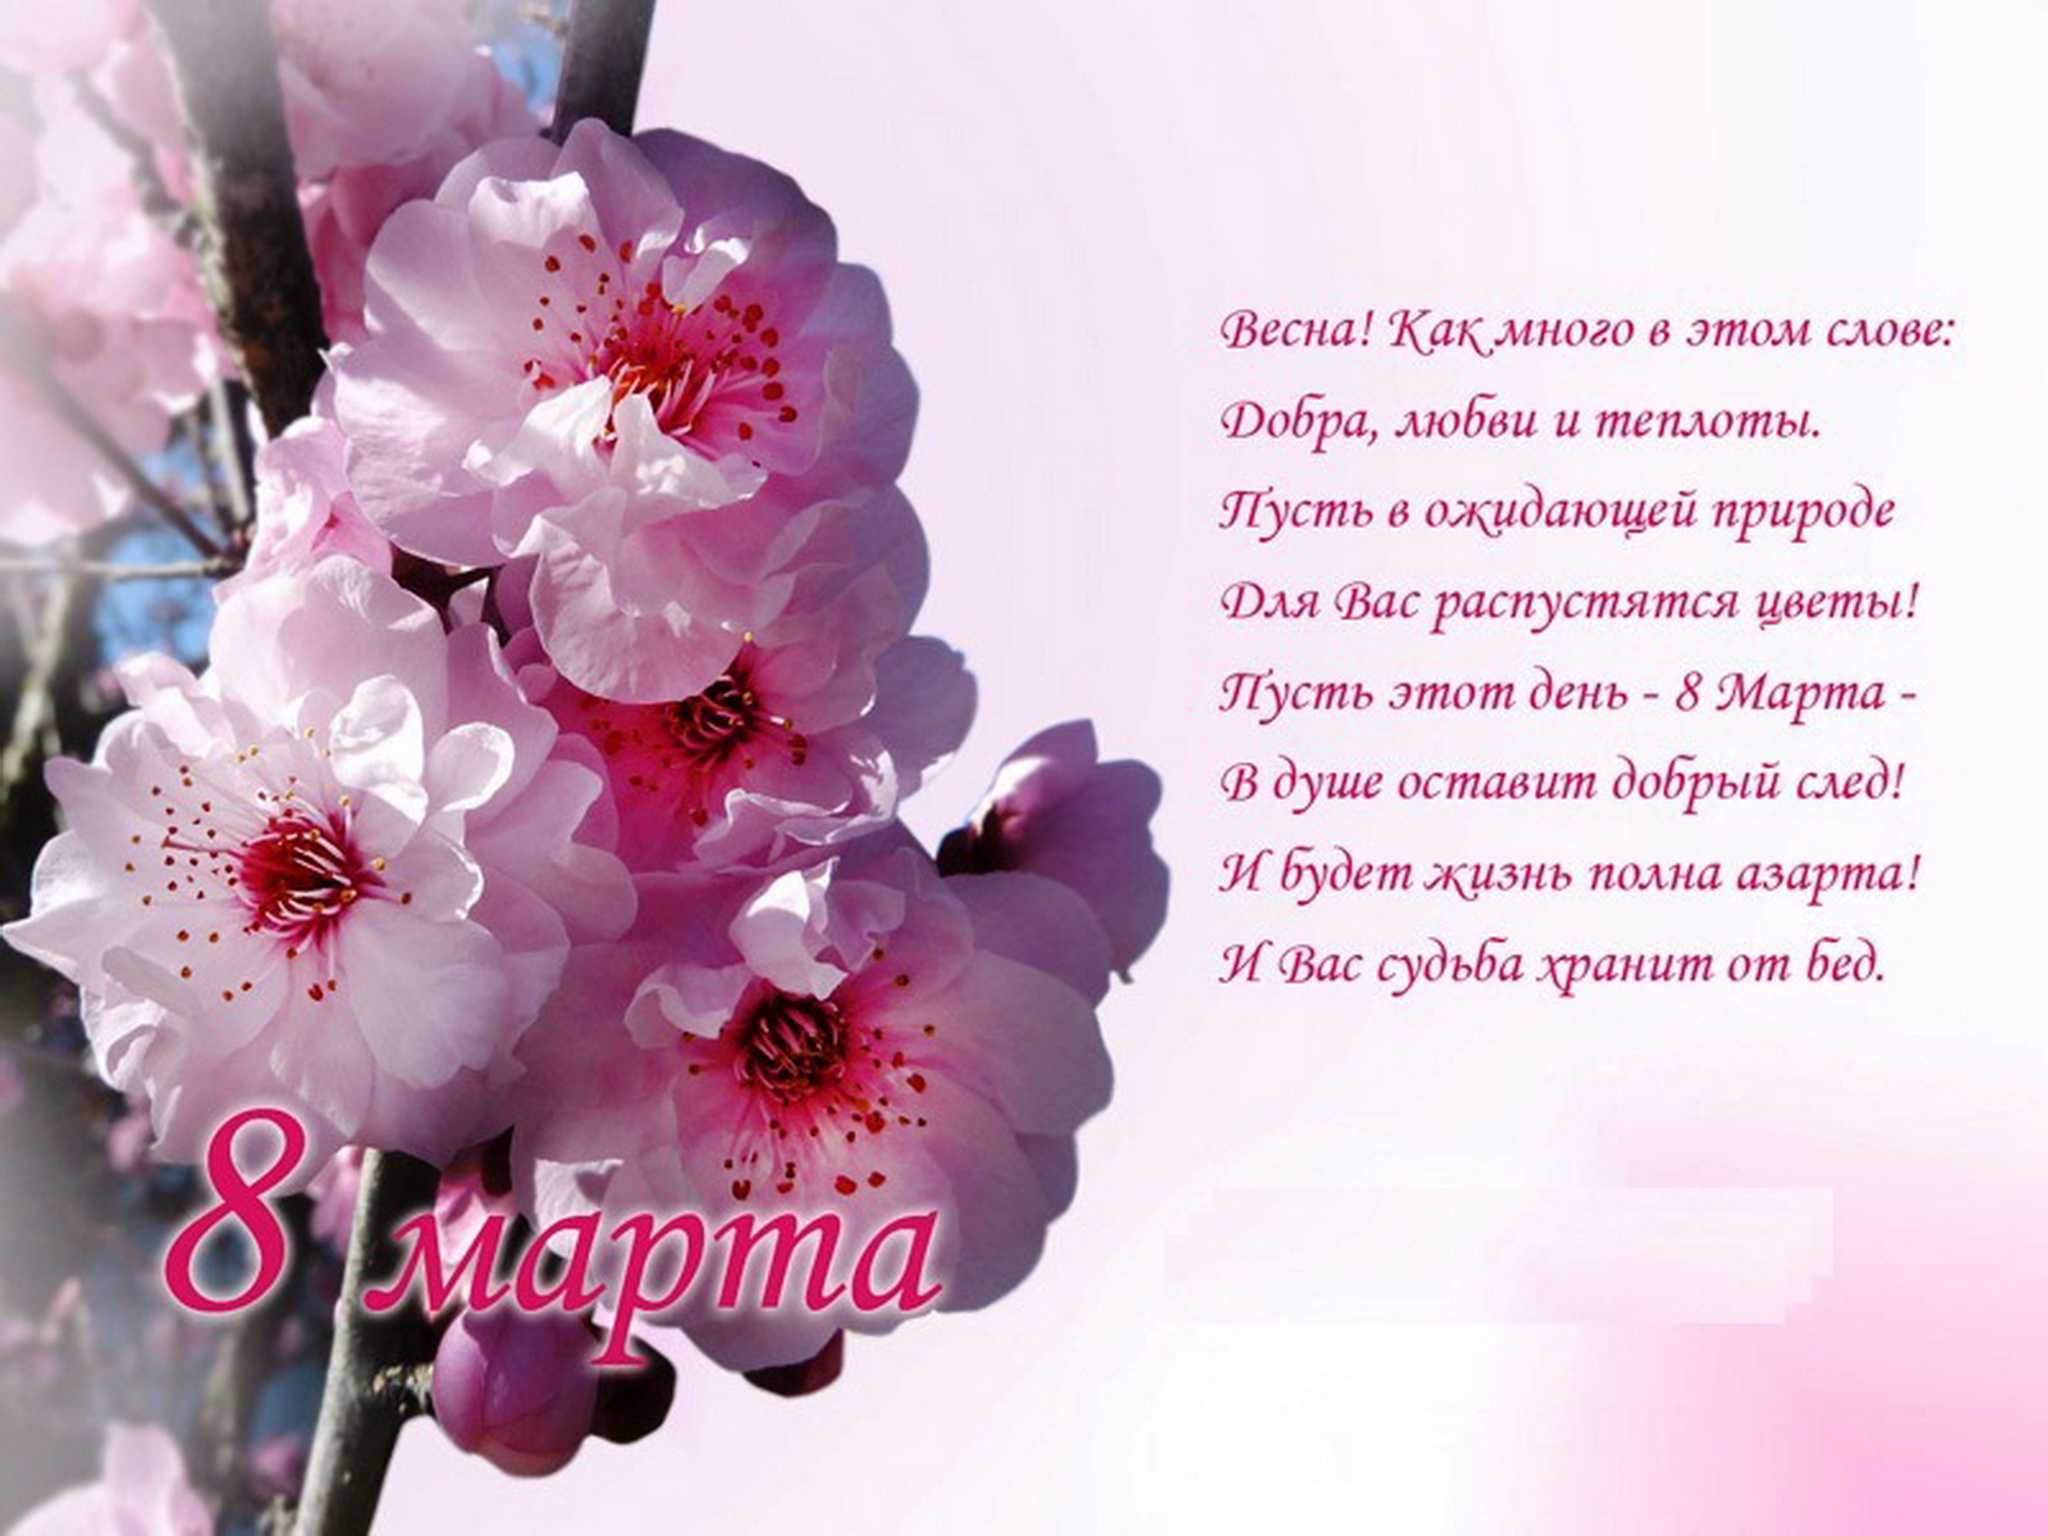 собрал красивые стихи на 8 марта маме В этот день принято поздравлять женщин и особенно приятно поздравить - маму